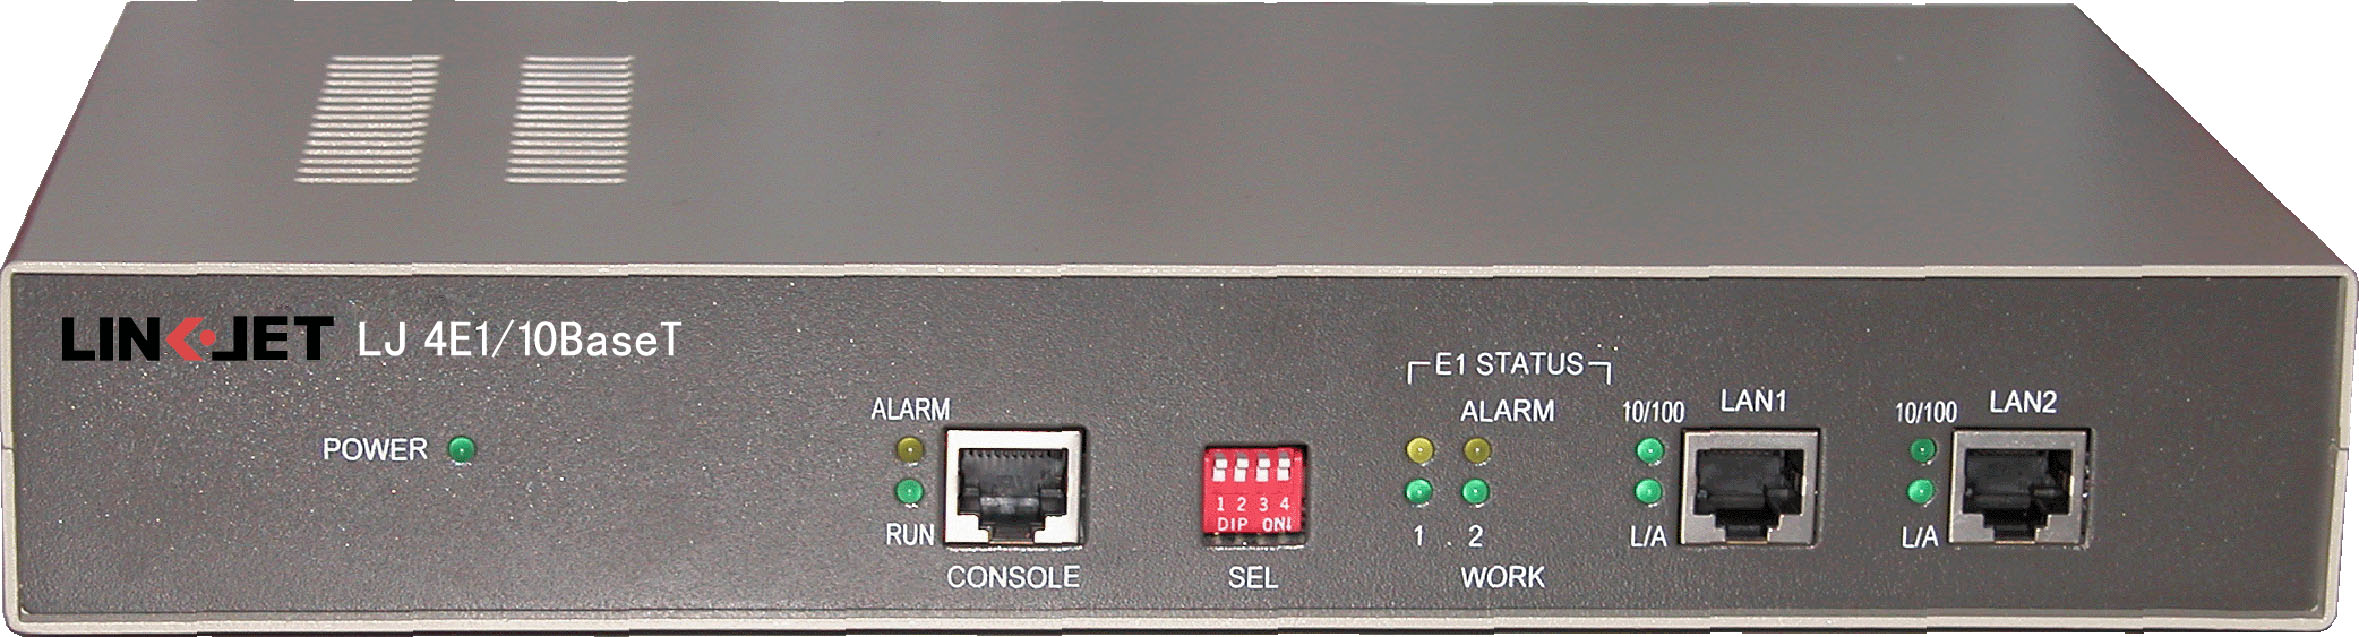 全新格林威尔ETRAM-10BT协议转换器 E1转以太网